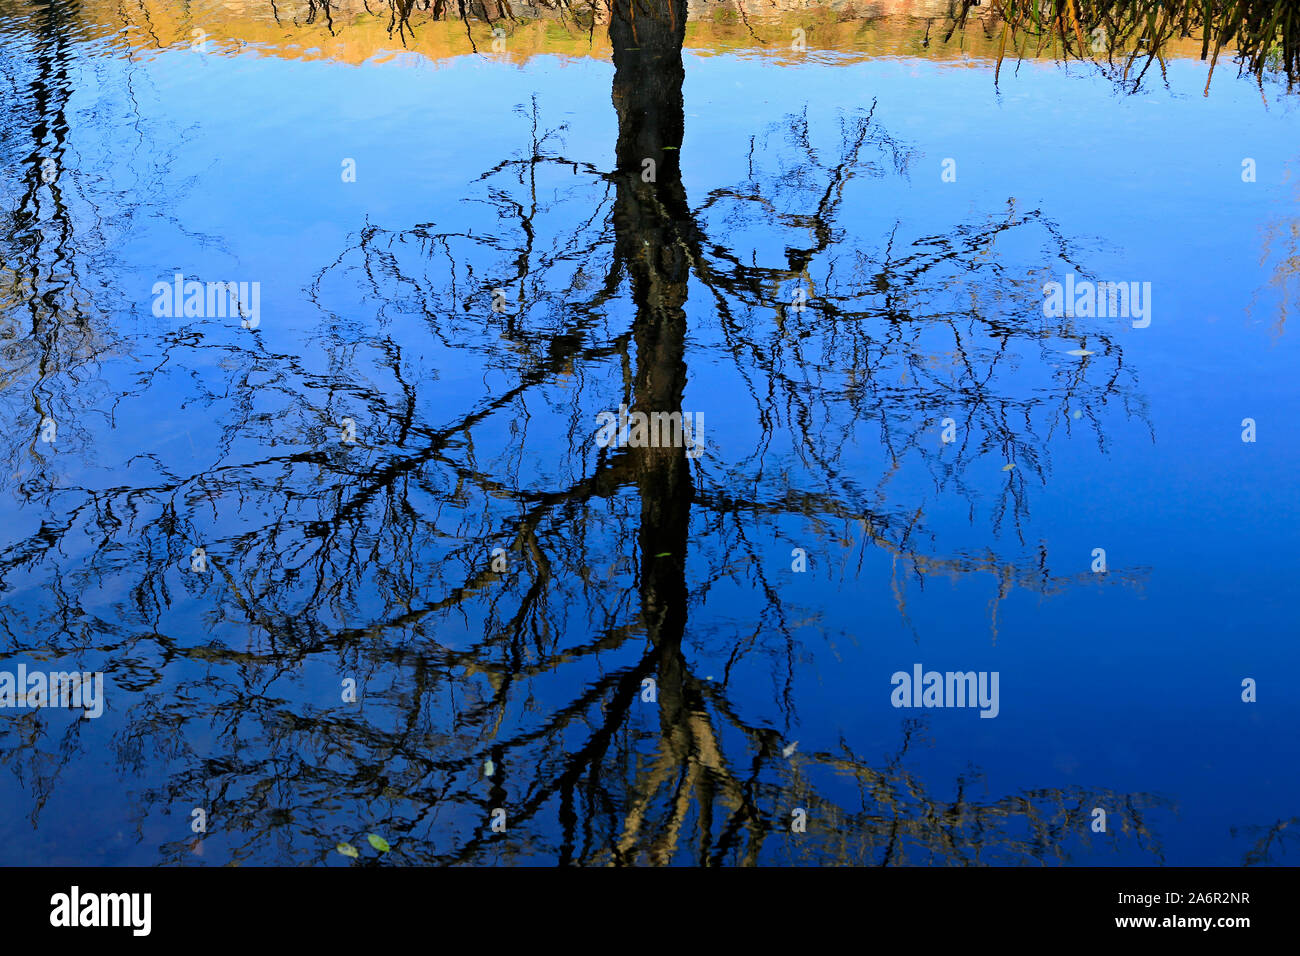 Le miroir de la nature. Arbre sans feuilles en miroir sur la surface d'un étang bleu à la fin de l'automne. Banque D'Images